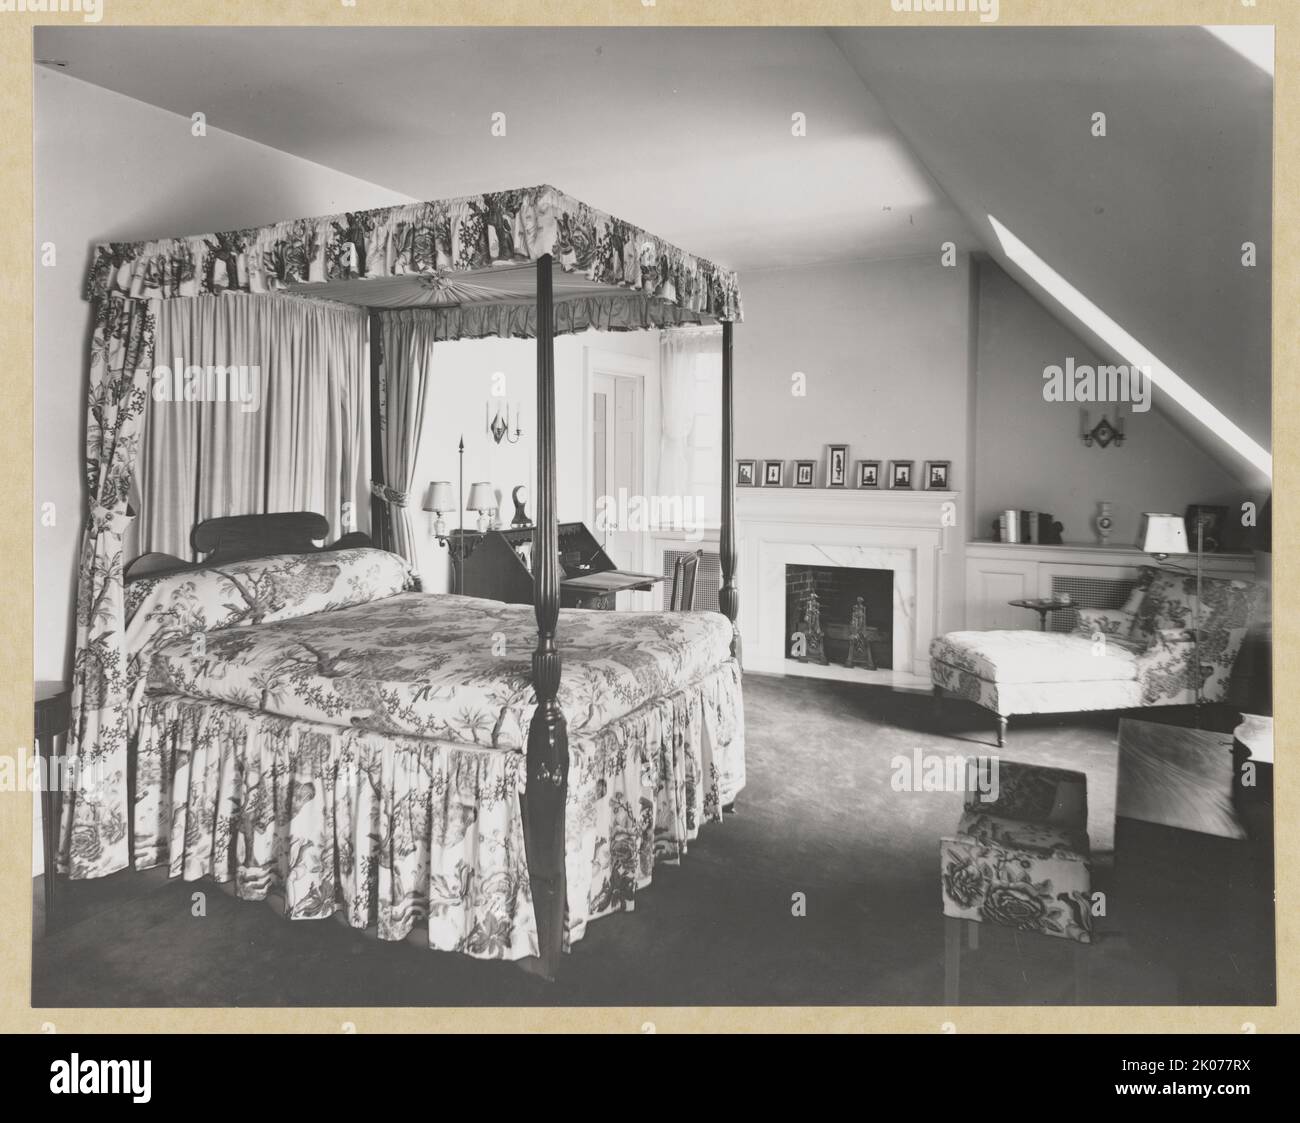 The Rocks, Heimat von Mr. &Amp; Mrs. Pierre Gaillard - Bedrooml, zwischen 1926 und 1950. Das Foto zeigt ein Schlafzimmer mit Himmelbett in "The Rocks", dem Haus von Pierre Gaillard, 1940 Shepherd Street, N.W., Washington, D.C., das 1926 erbaut wurde. Stockfoto